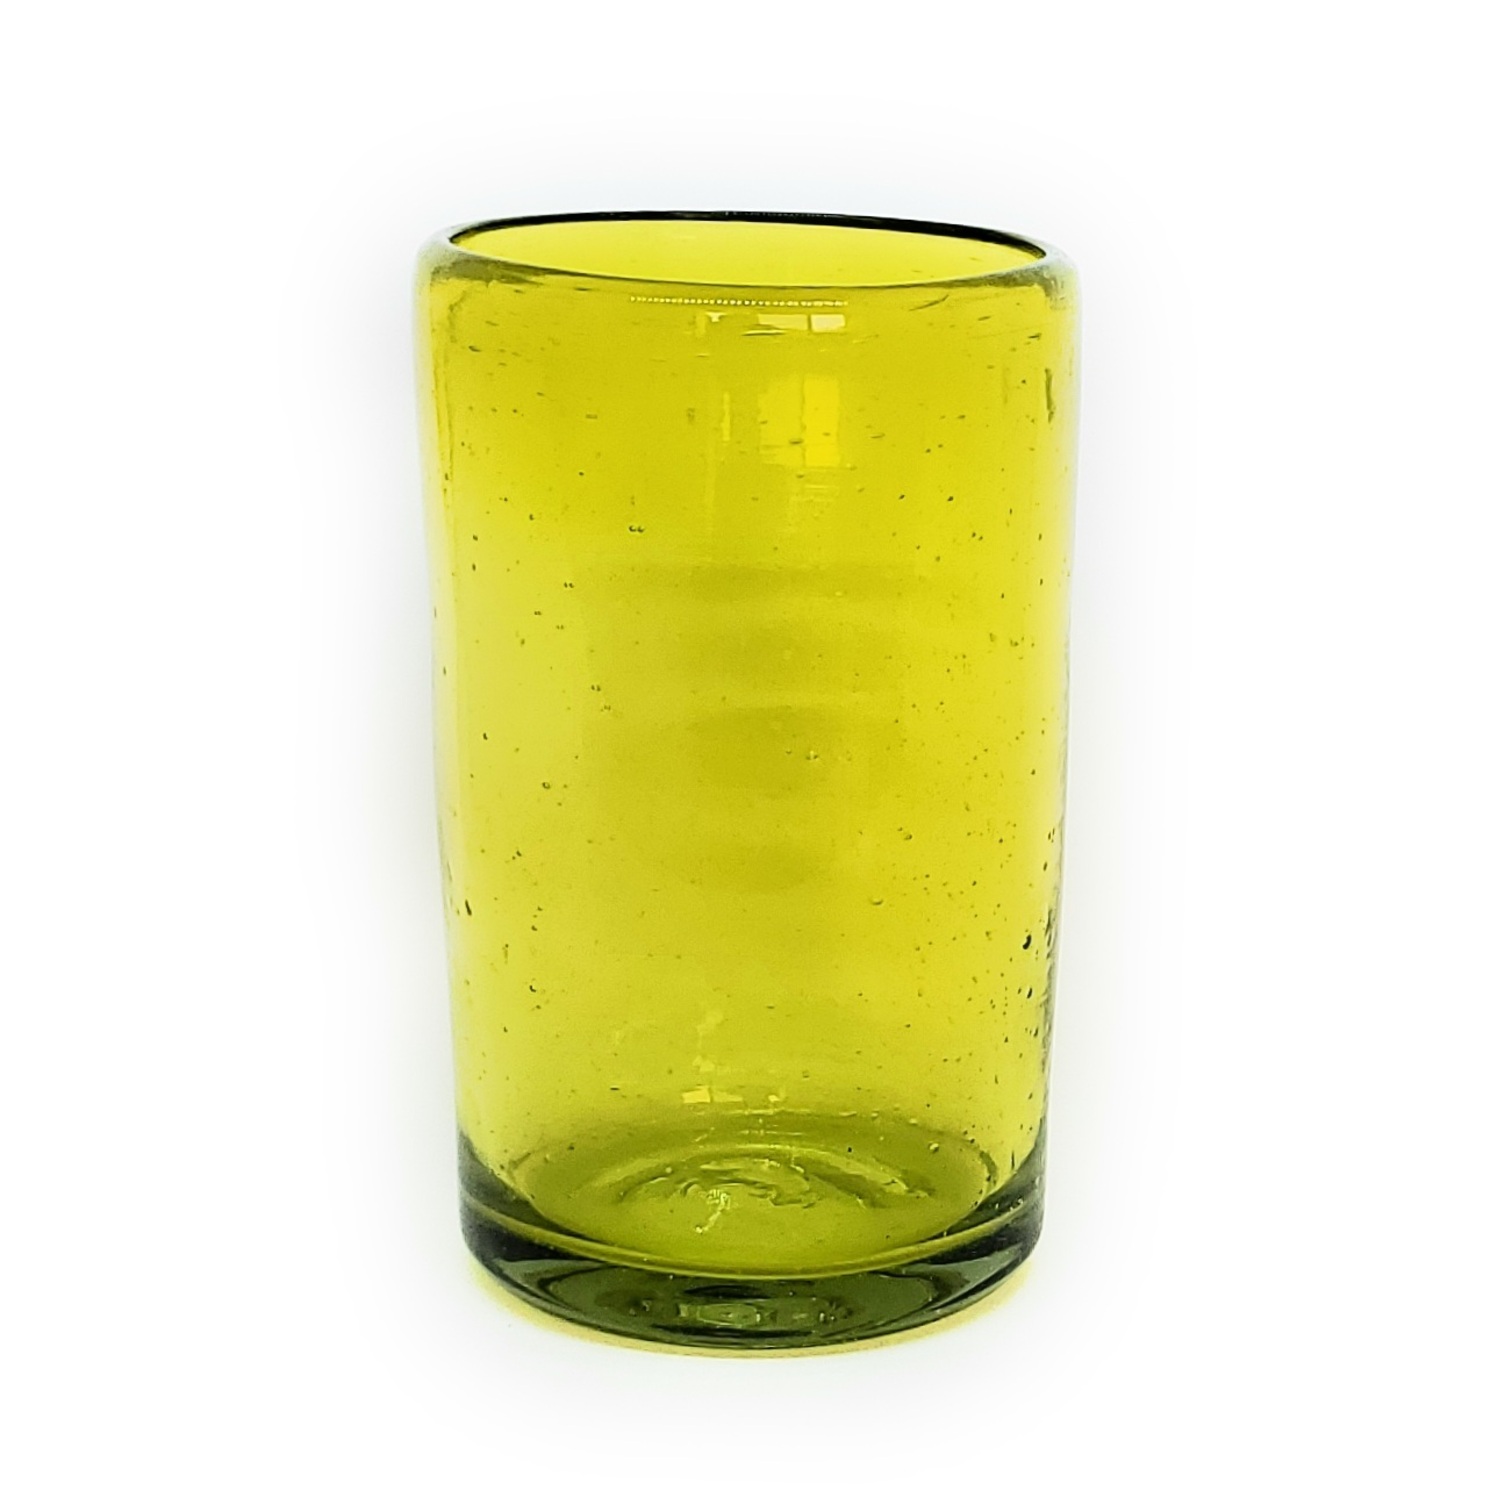 Vasos de Vidrio Soplado / Juego de 6 vasos grandes color amarillos / Éstos artesanales vasos le darán un toque clásico a su bebida favorita.